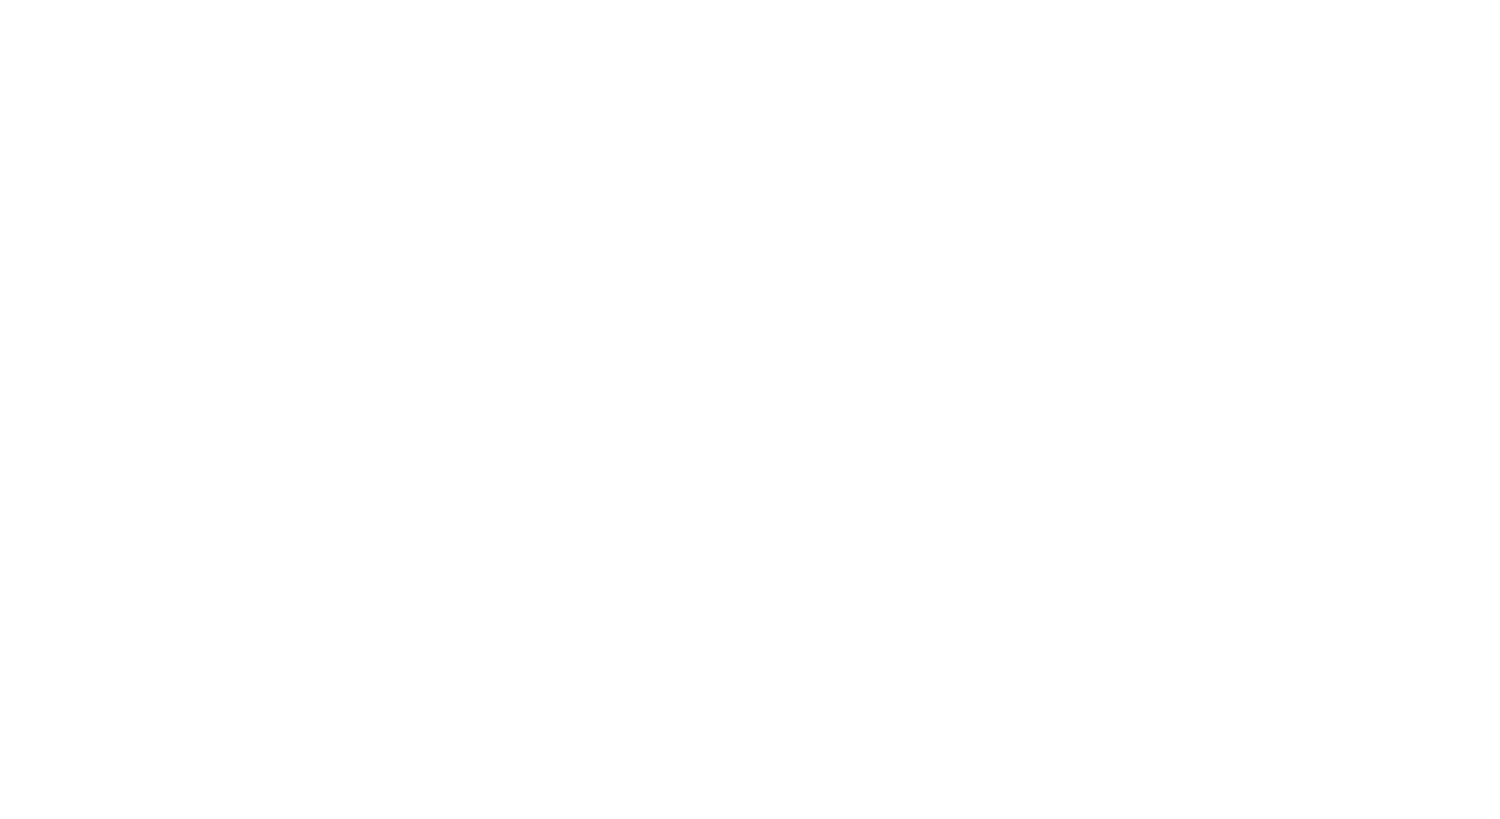 Sleight School